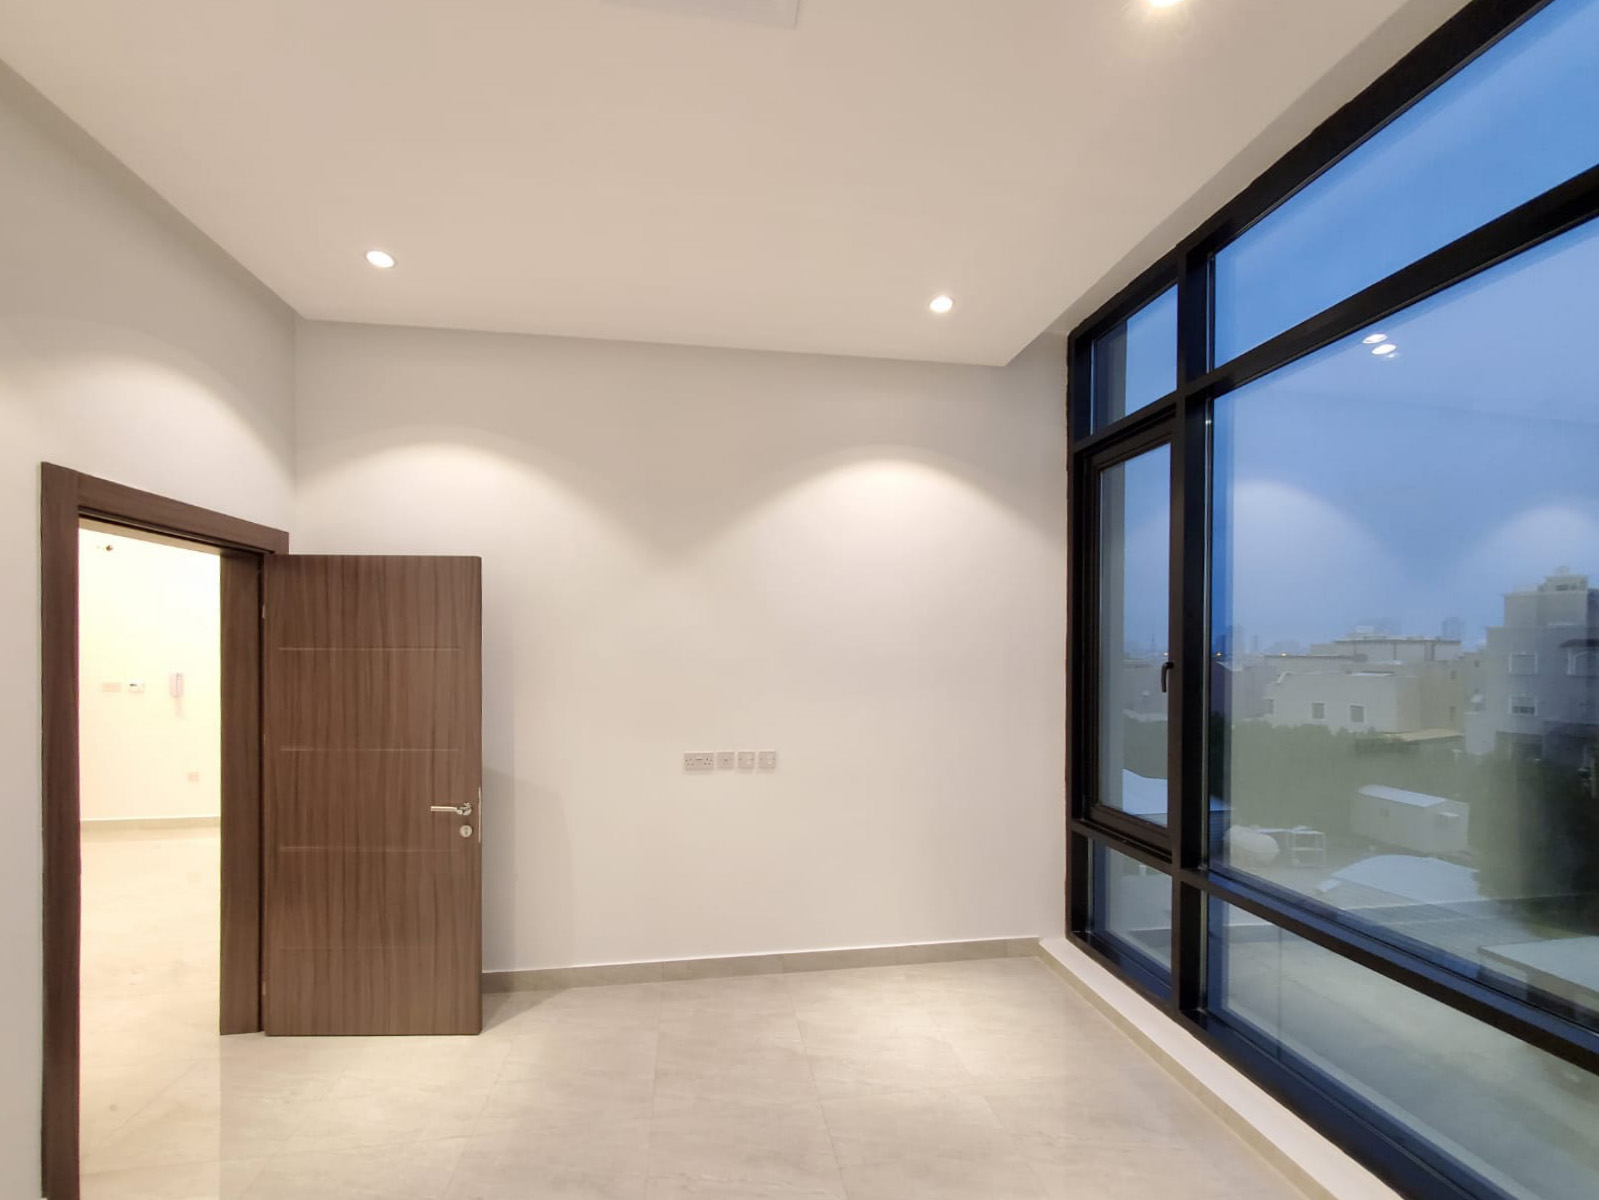 Adan – brand new, unfurnished three bedroom apartment